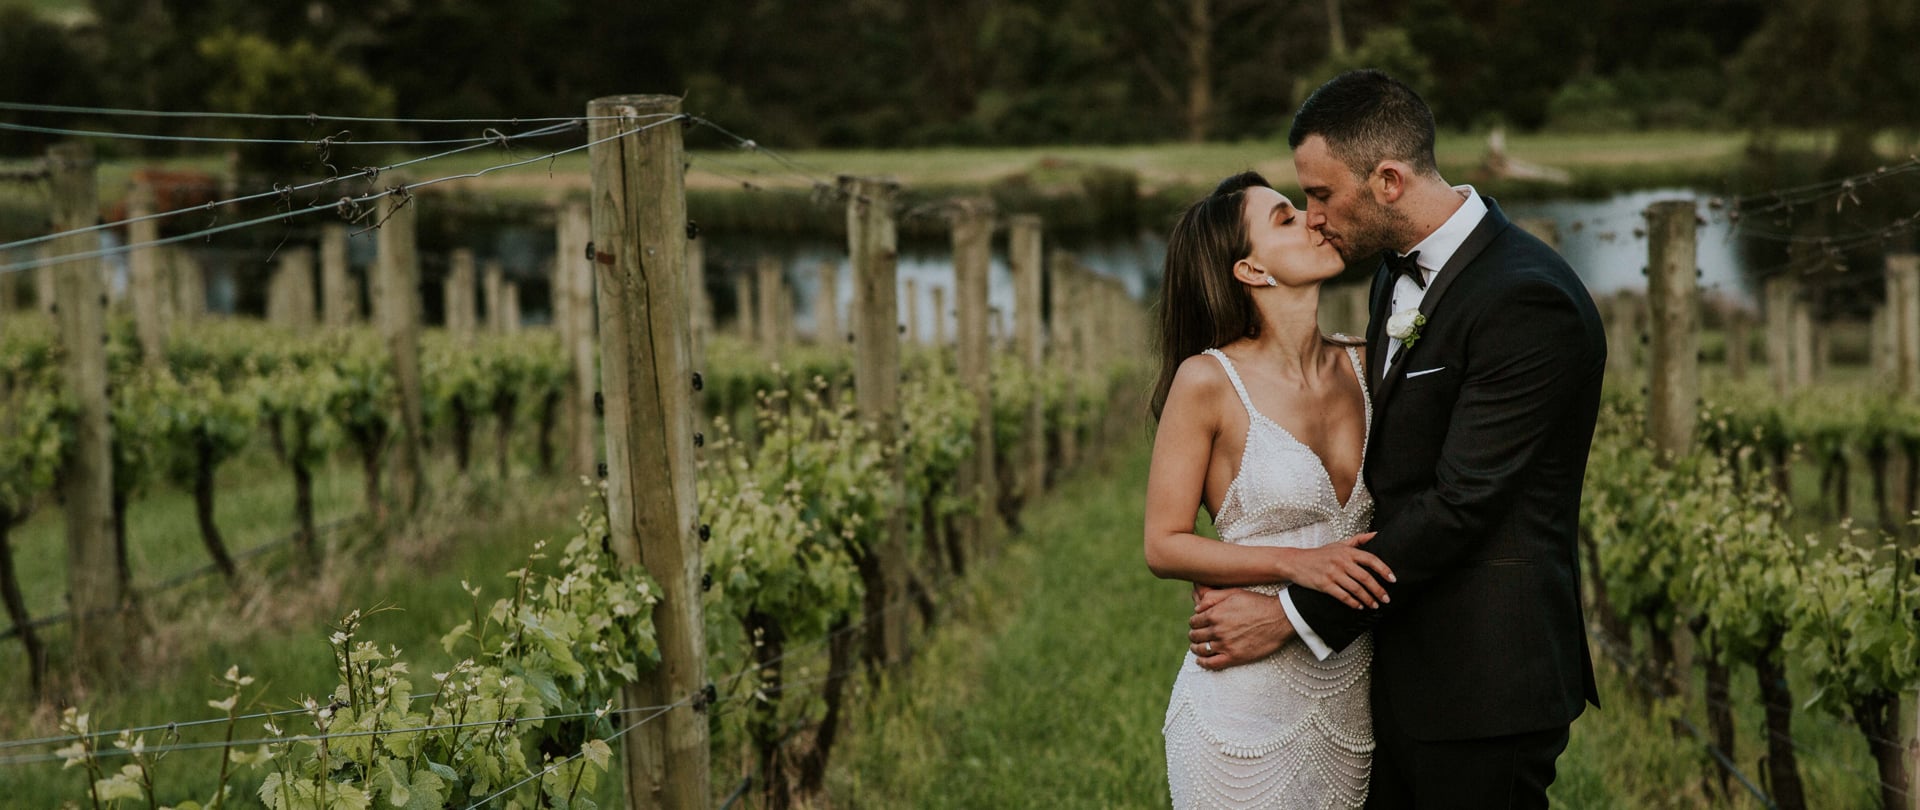 Tessa & Joel Wedding Video Filmed at Mornington Peninsula, Victoria